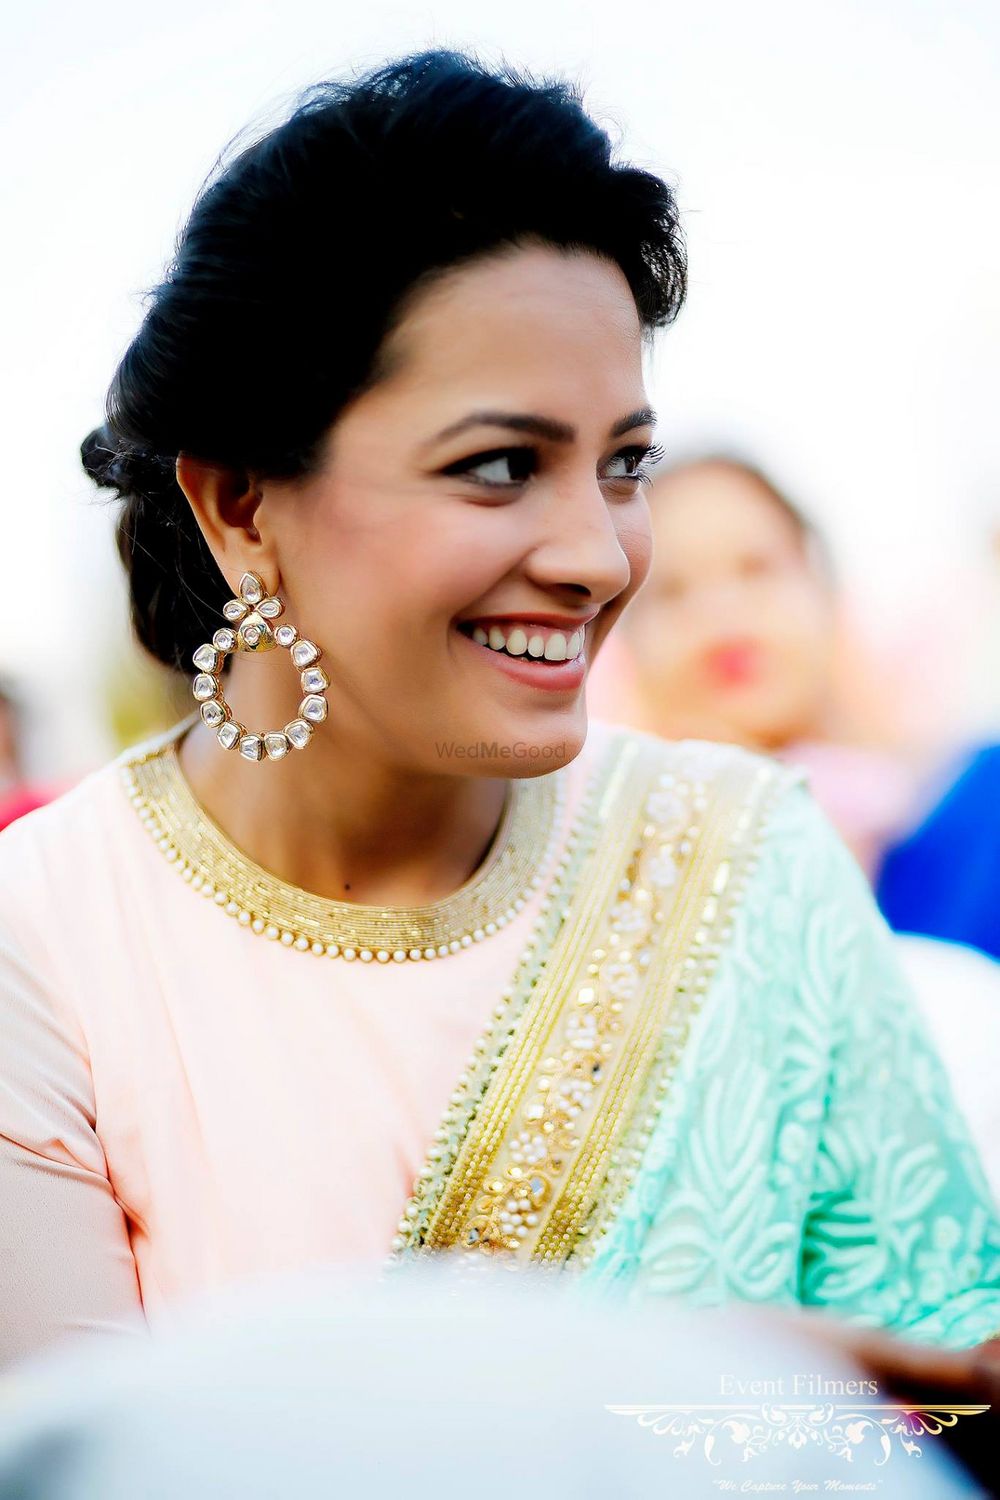 Photo of Anita Hassanandani Wearing Pastel Sari